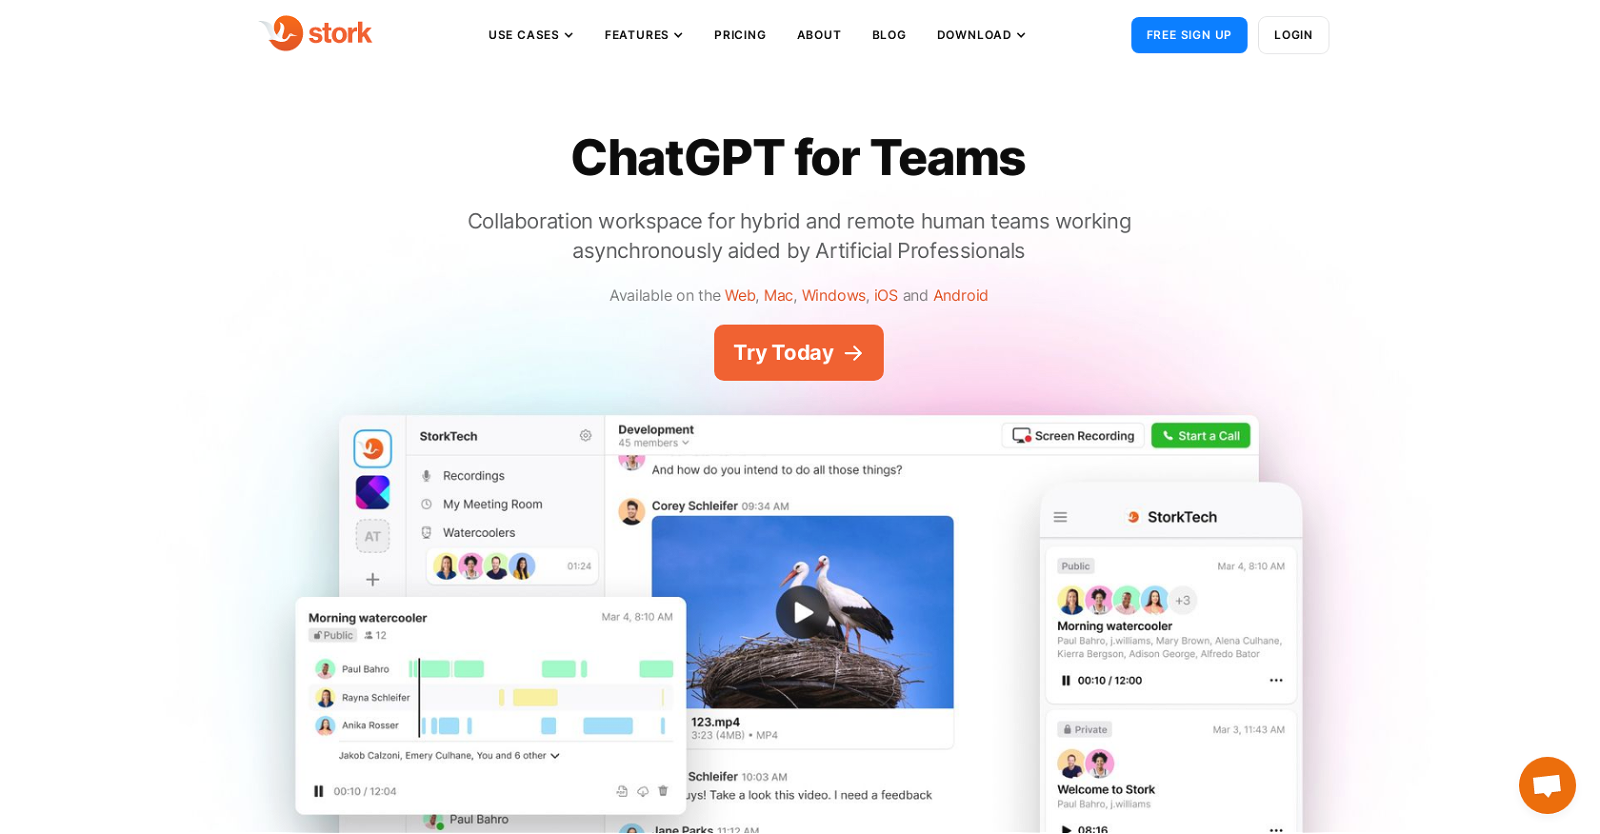 Stork: ChatGPT for Teams image